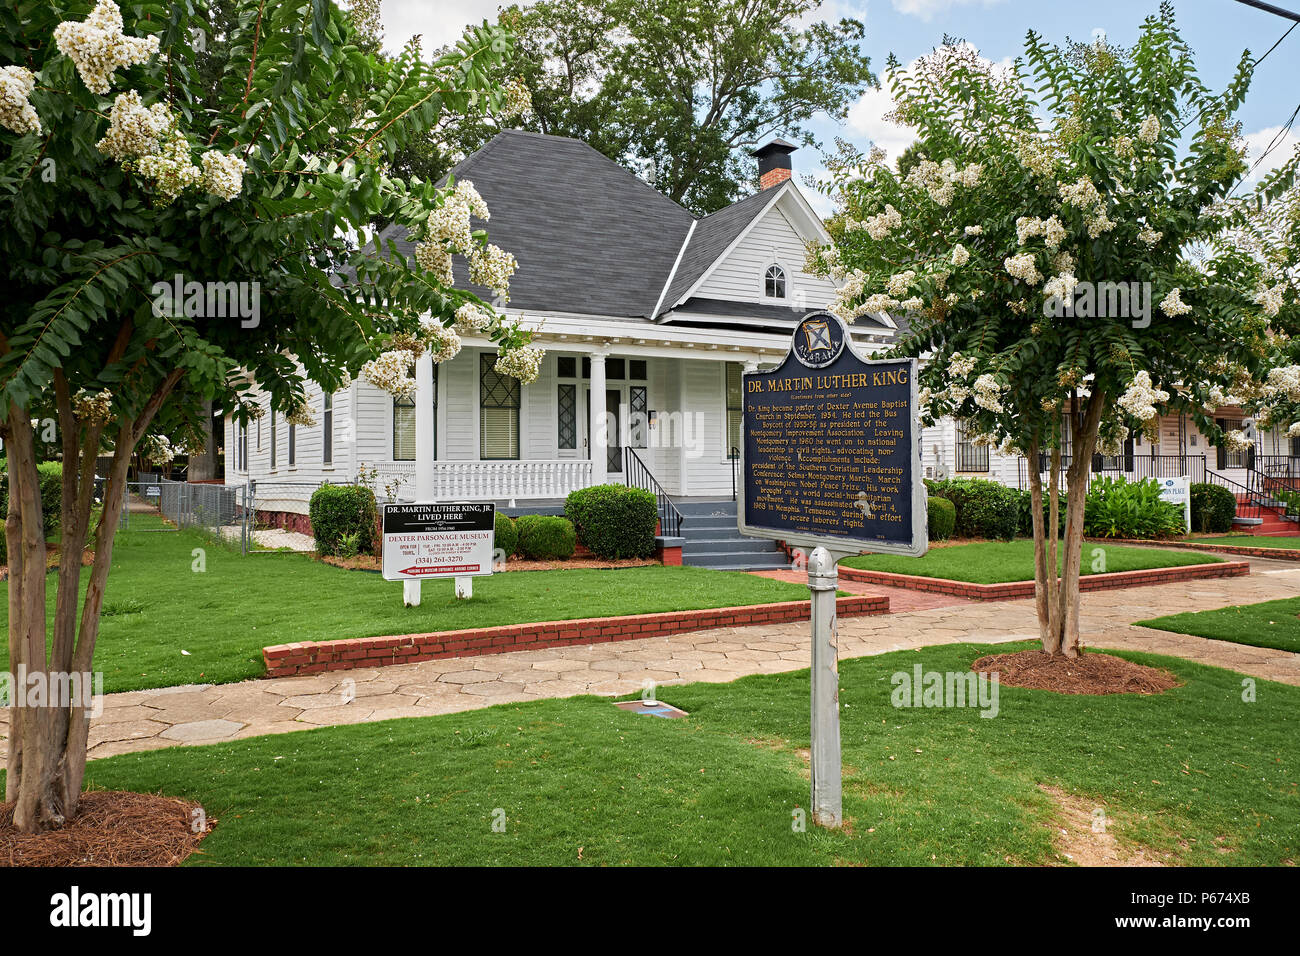 La maison ou la maison de Martin Luther King Jr a noté des droits civiques à Montgomery, en Alabama, USA. Banque D'Images